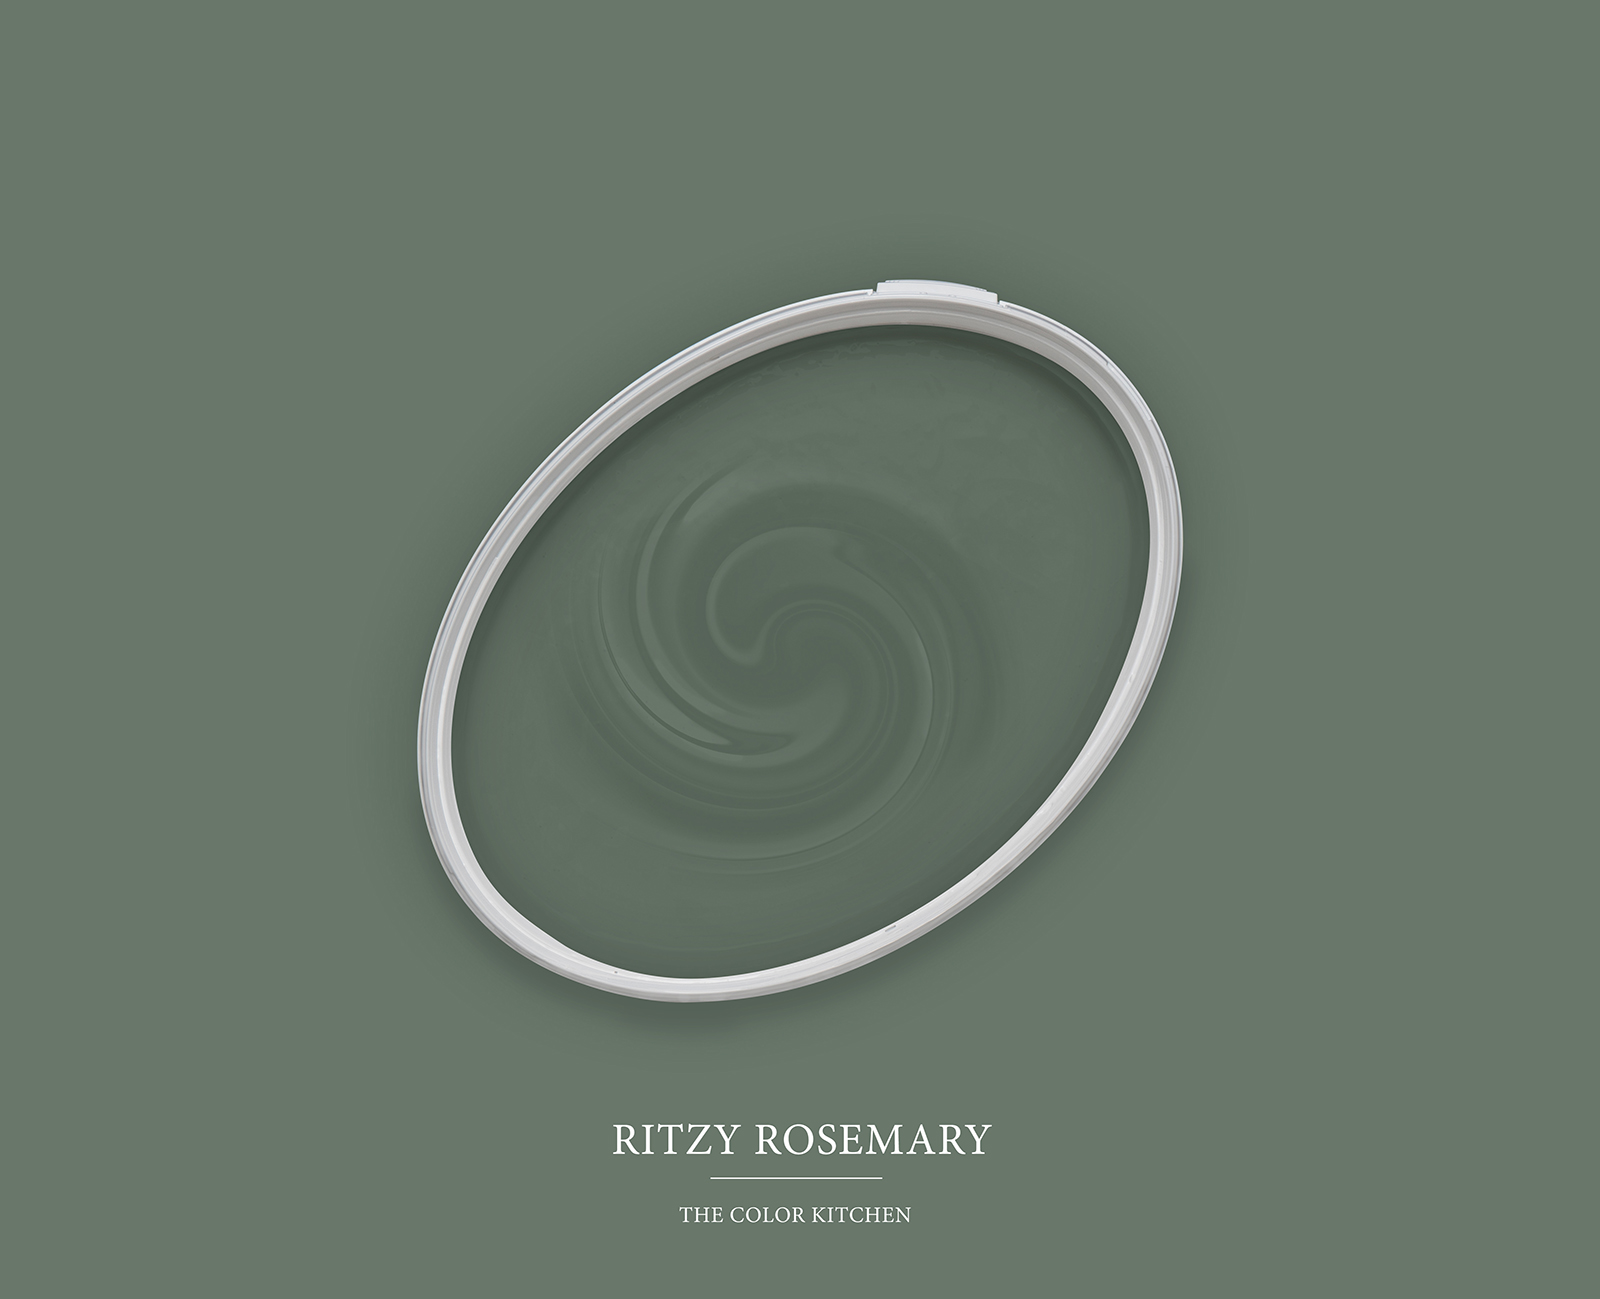 Wandfarbe in wohnlichem Grün »Ritzy Rosemary« TCK4005 – 5 Liter
